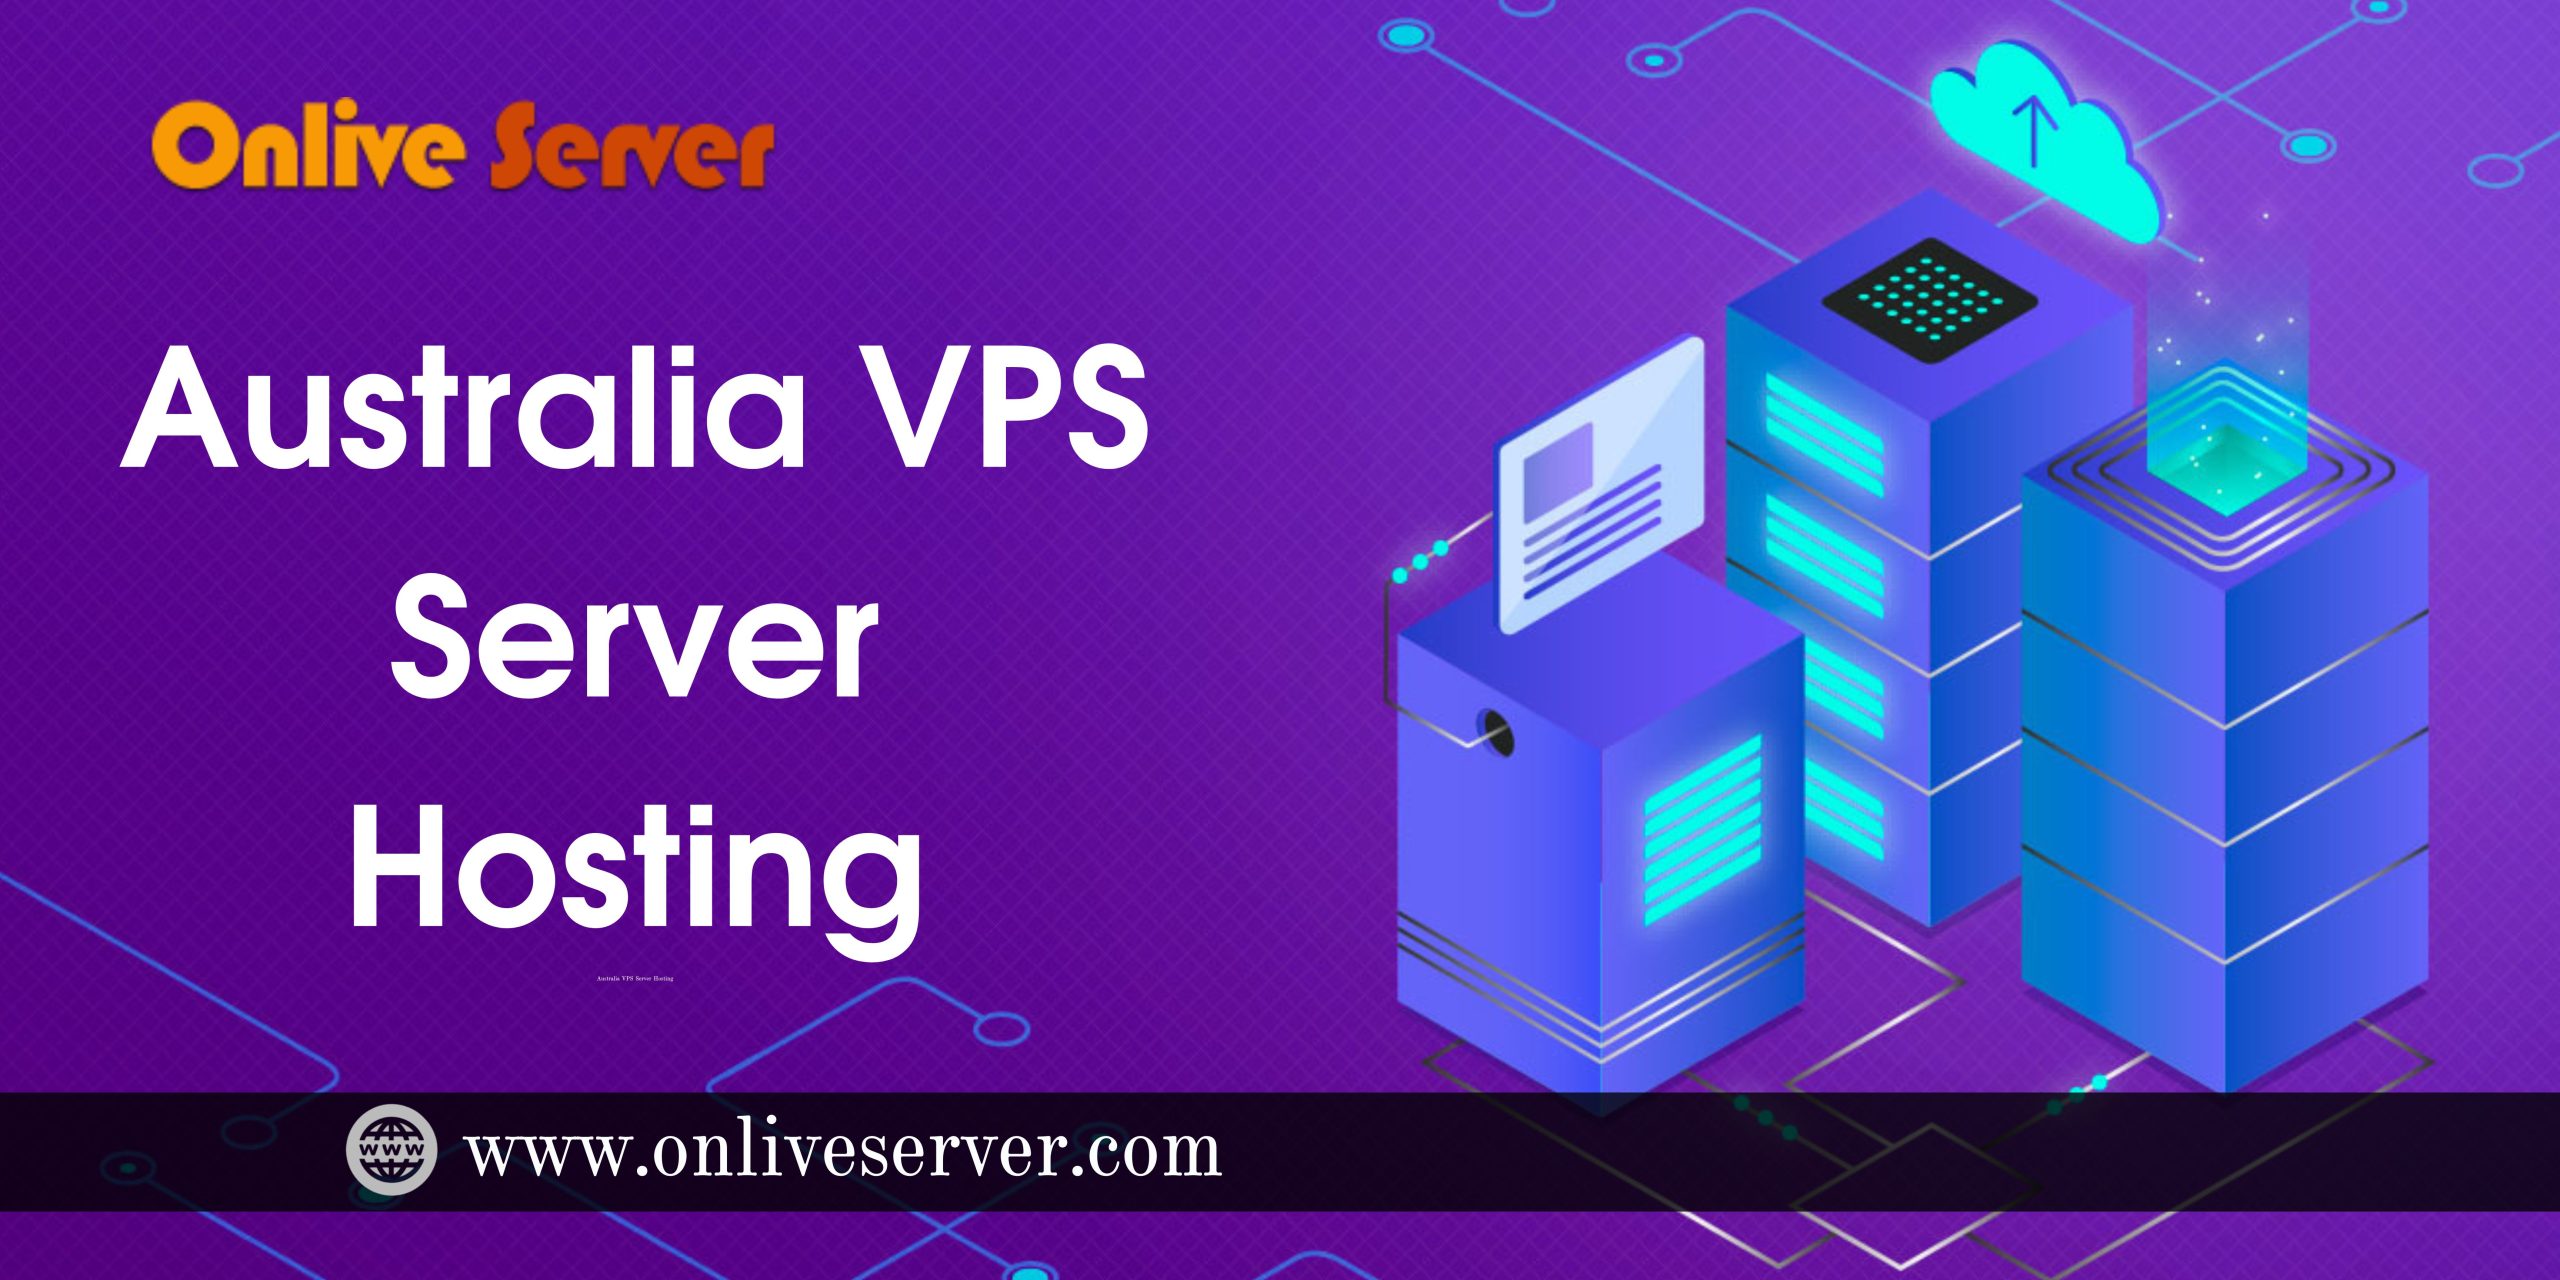 Australia VPS Server Hosting